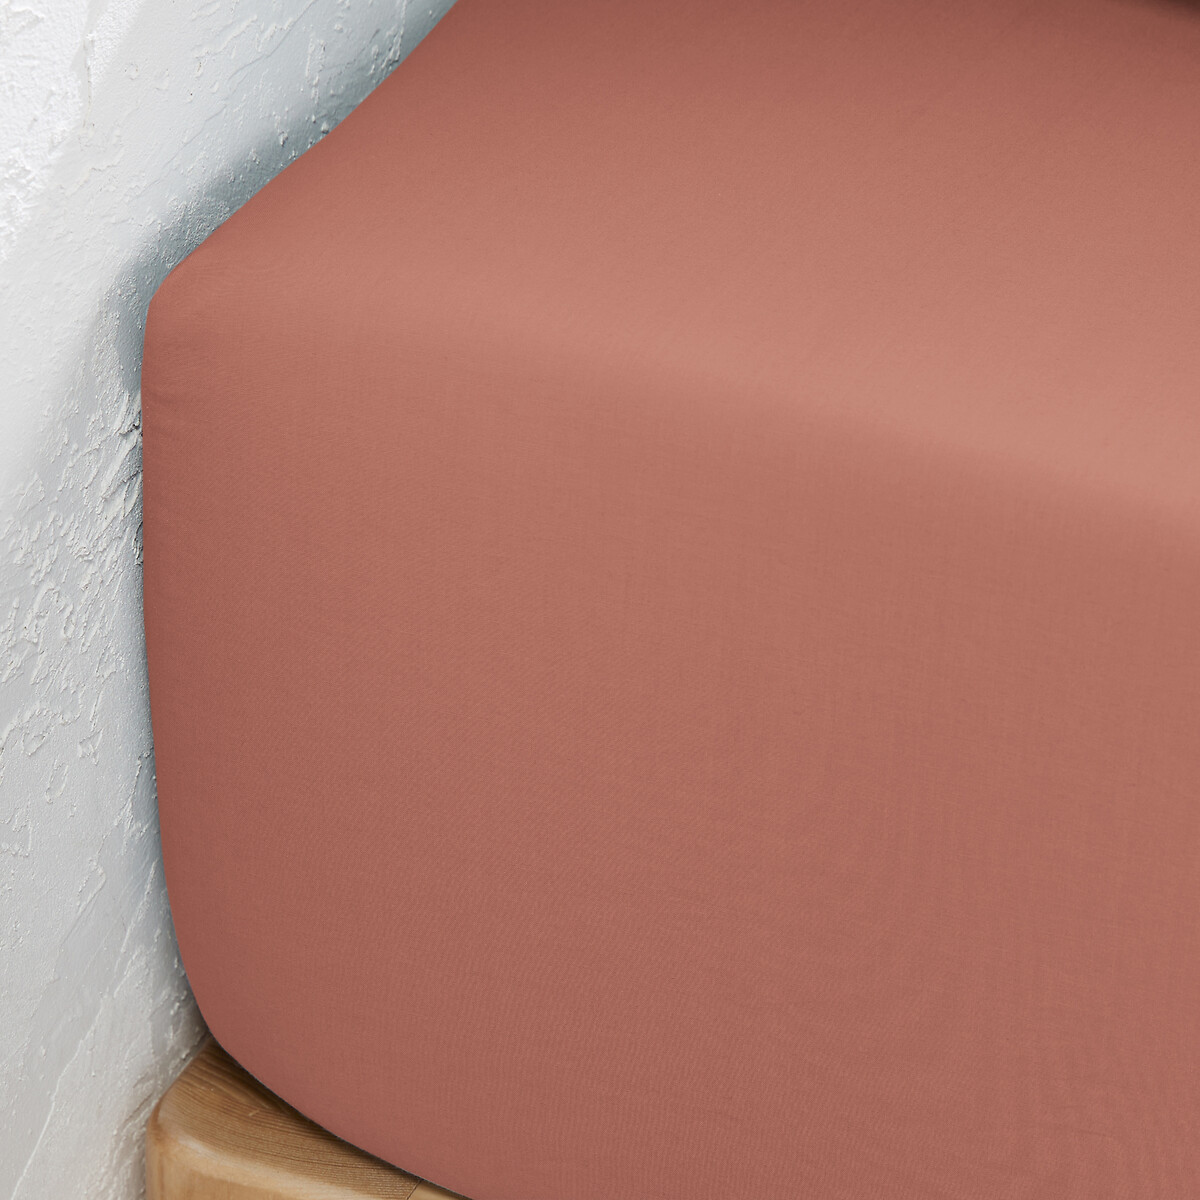 Простыня La Redoute Натяжная из биохлопковой перкали 140 x 200 см розовый, размер 140 x 200 см - фото 2